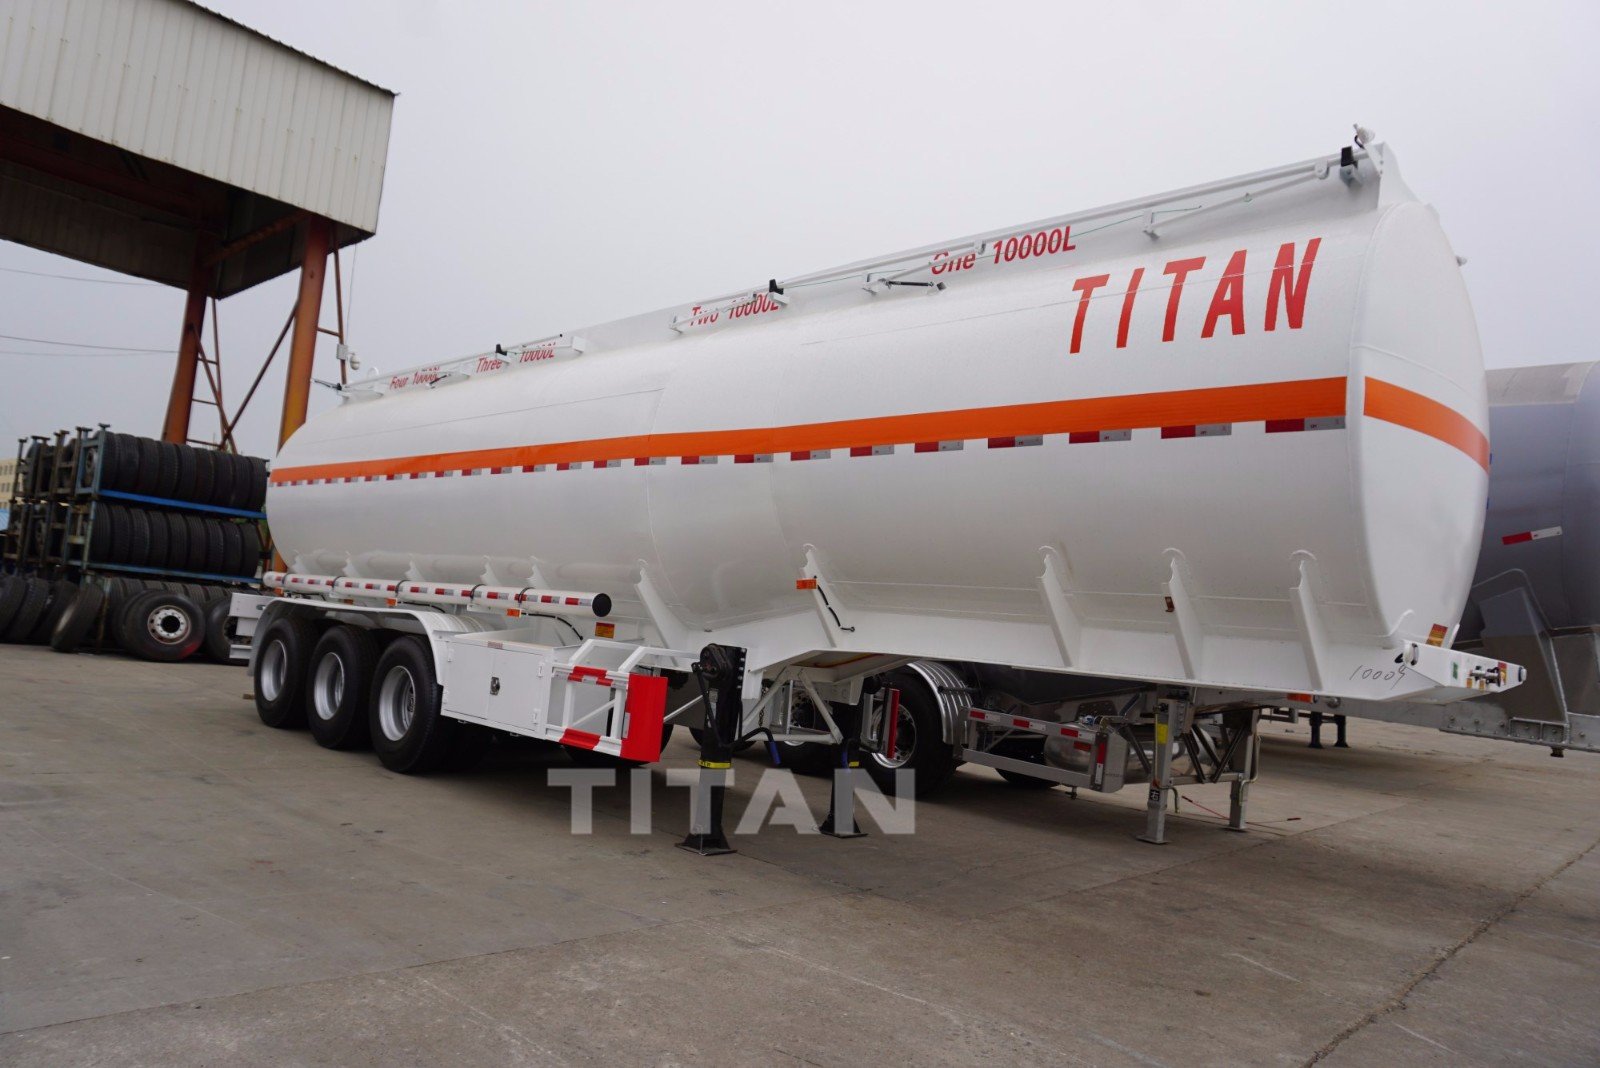 42,000 liters Water tank trailers 